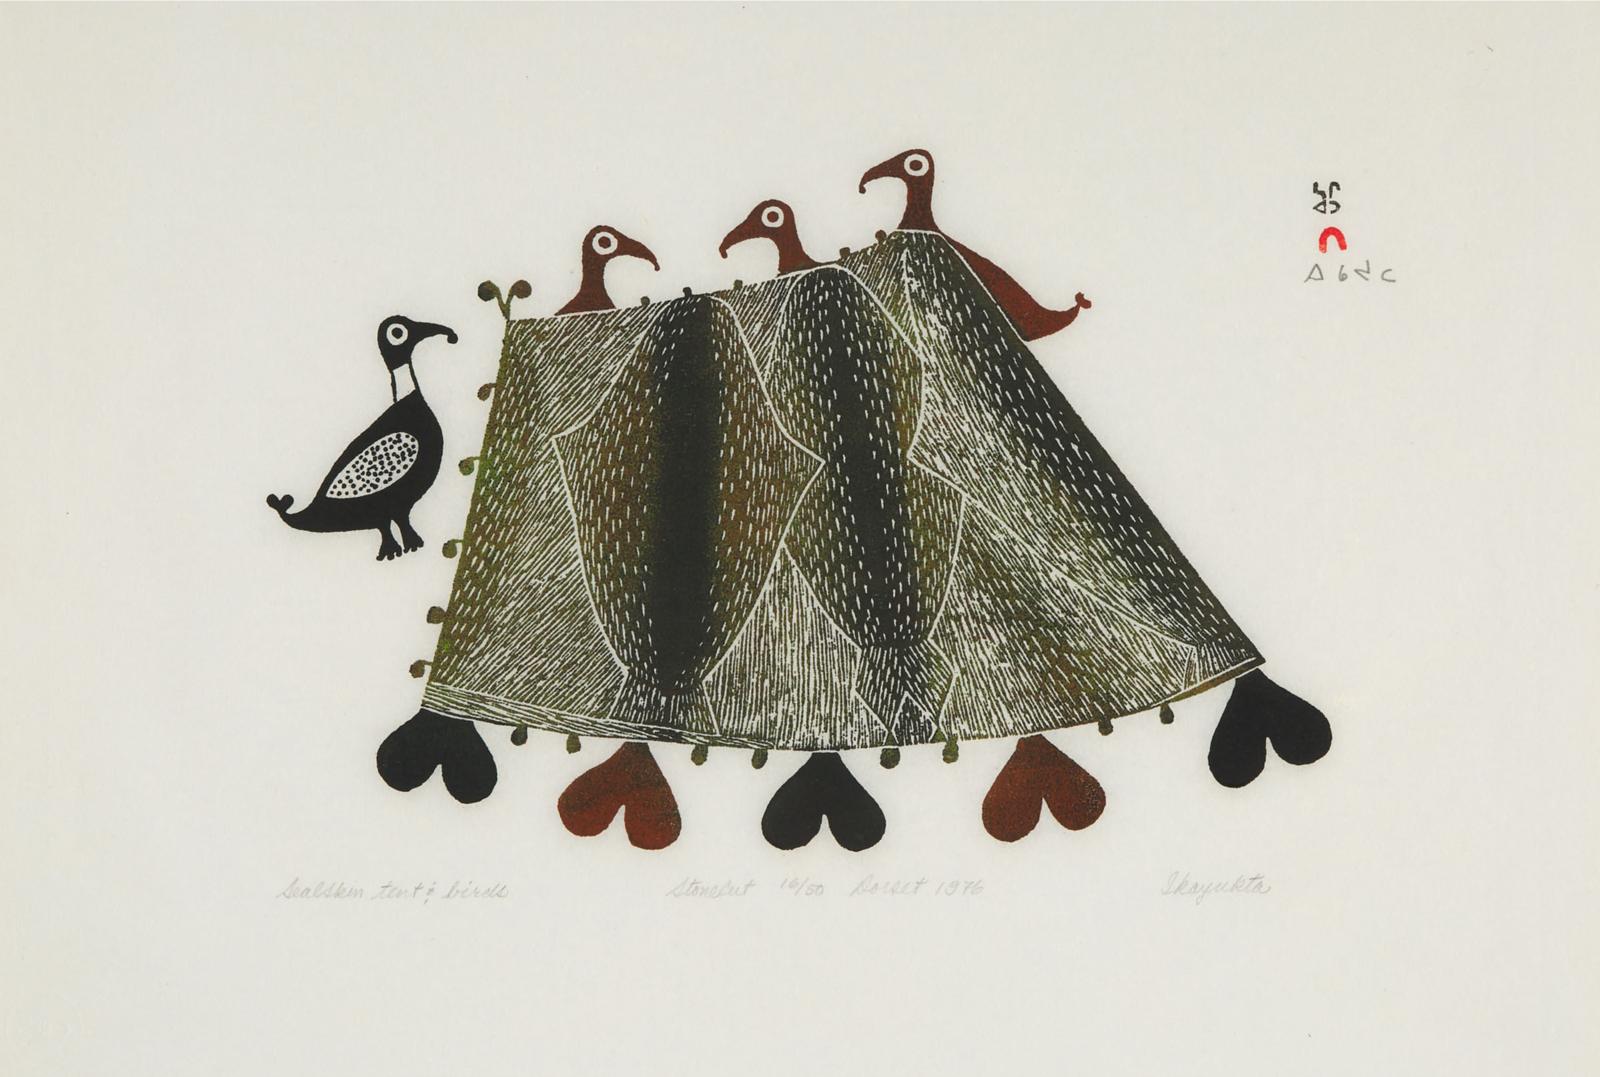 Ikayukta Tunnillie (1911-1980) - Sealskin Tent And Birds